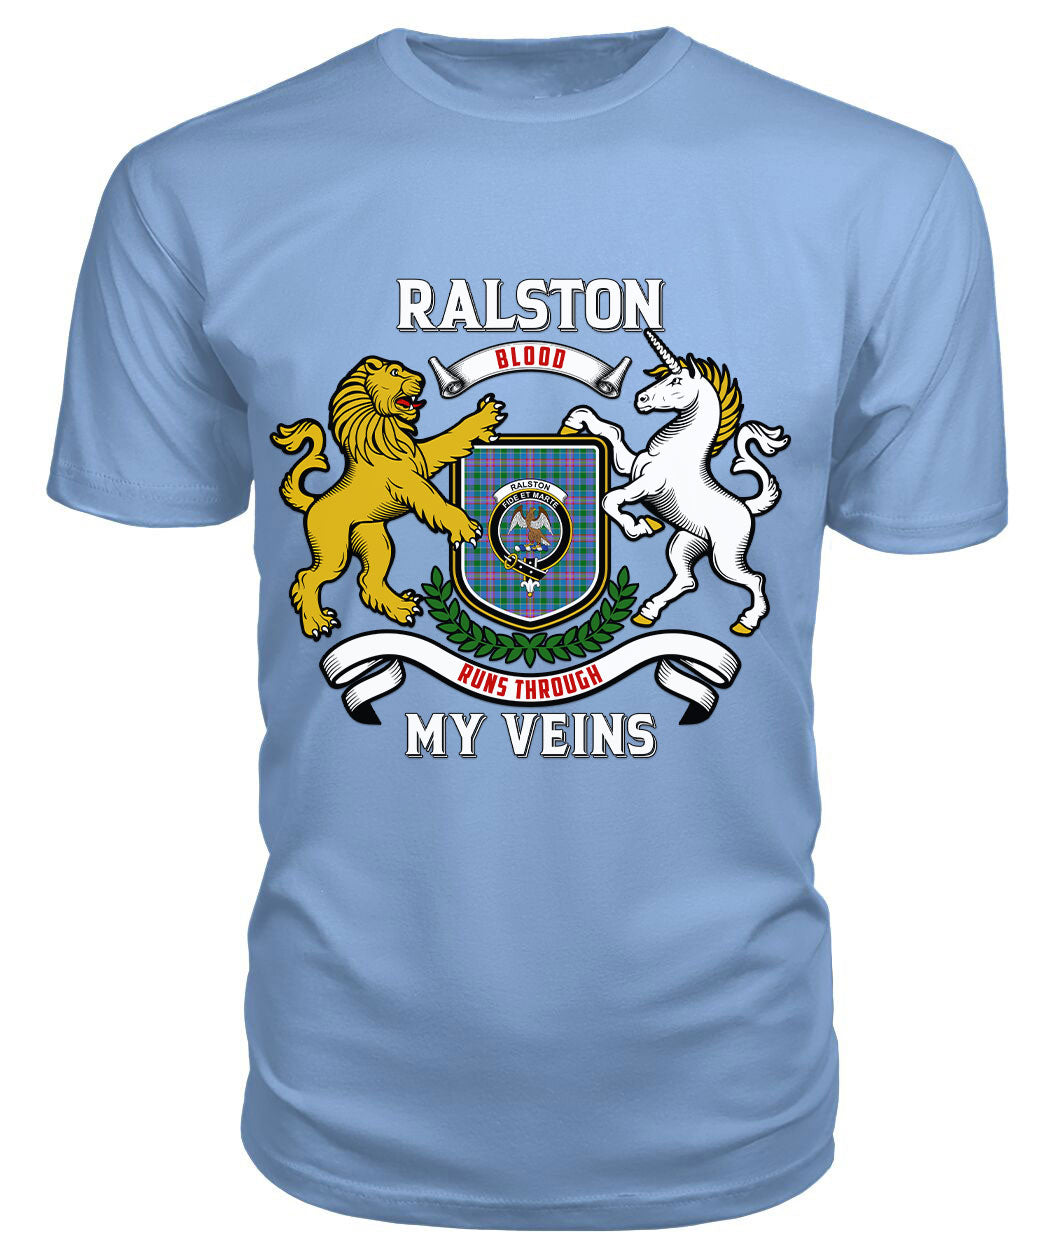 Ralston Tartan Crest 2D T-shirt - Blood Runs Through My Veins Style